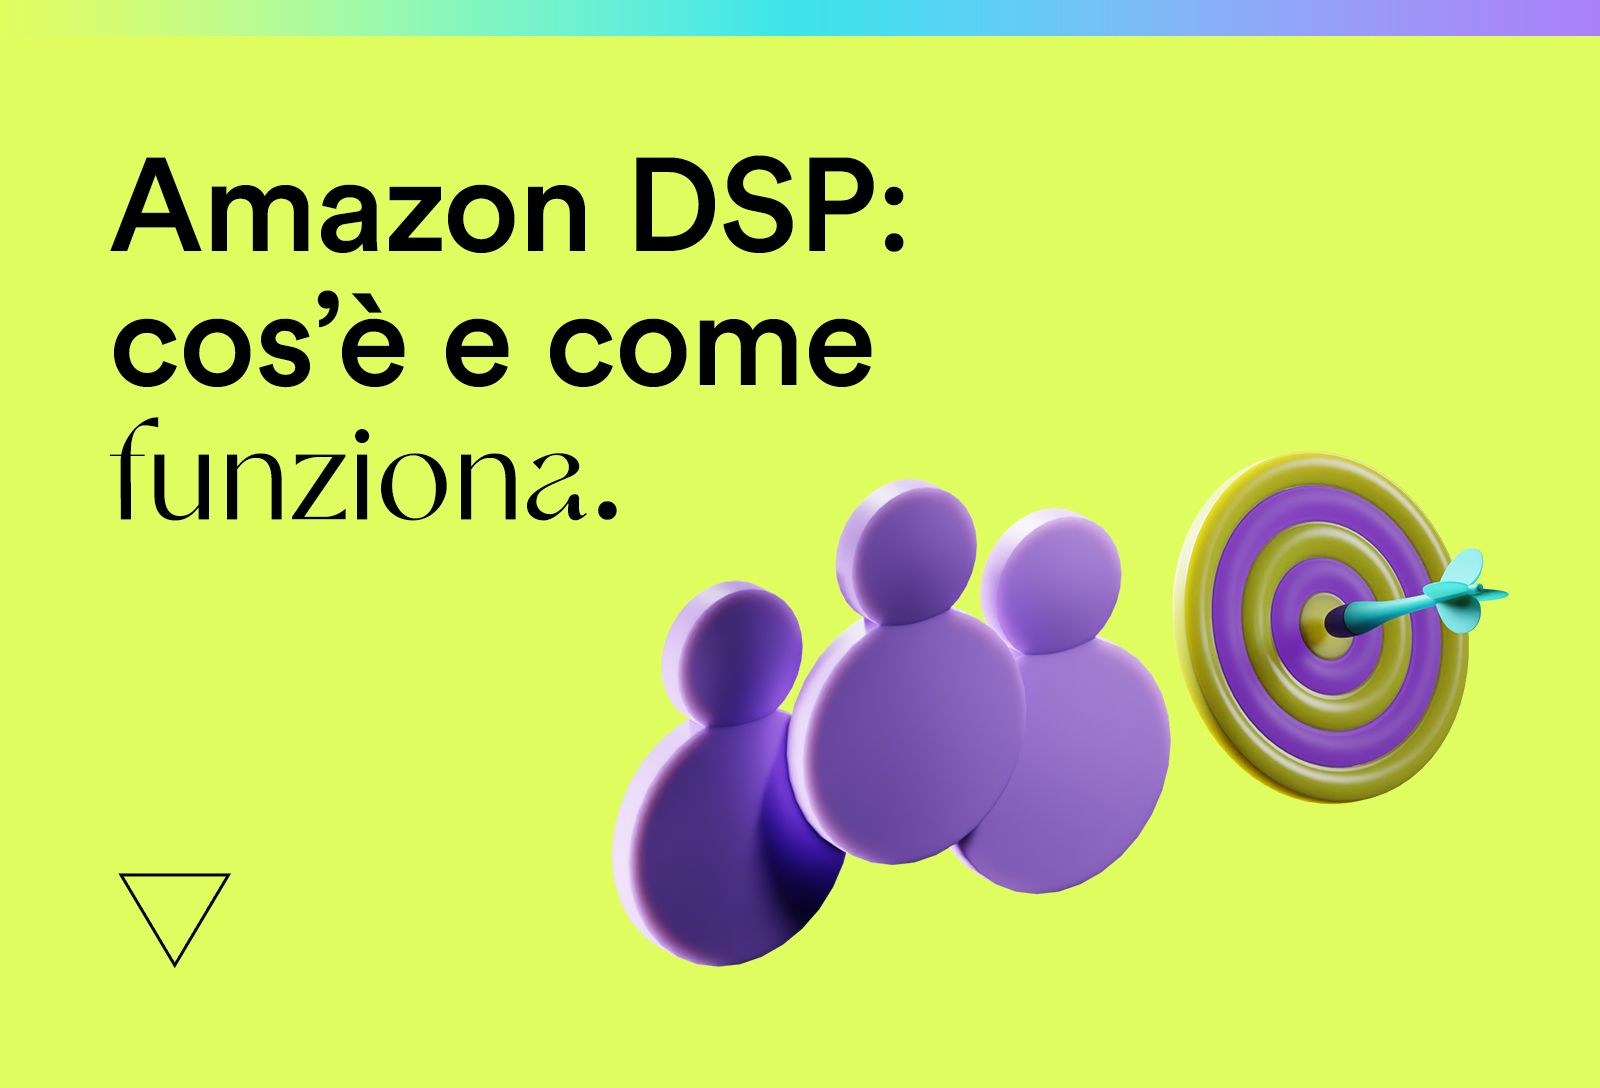 Amazon DSP: cos’è, come funziona e quali vantaggi offre.